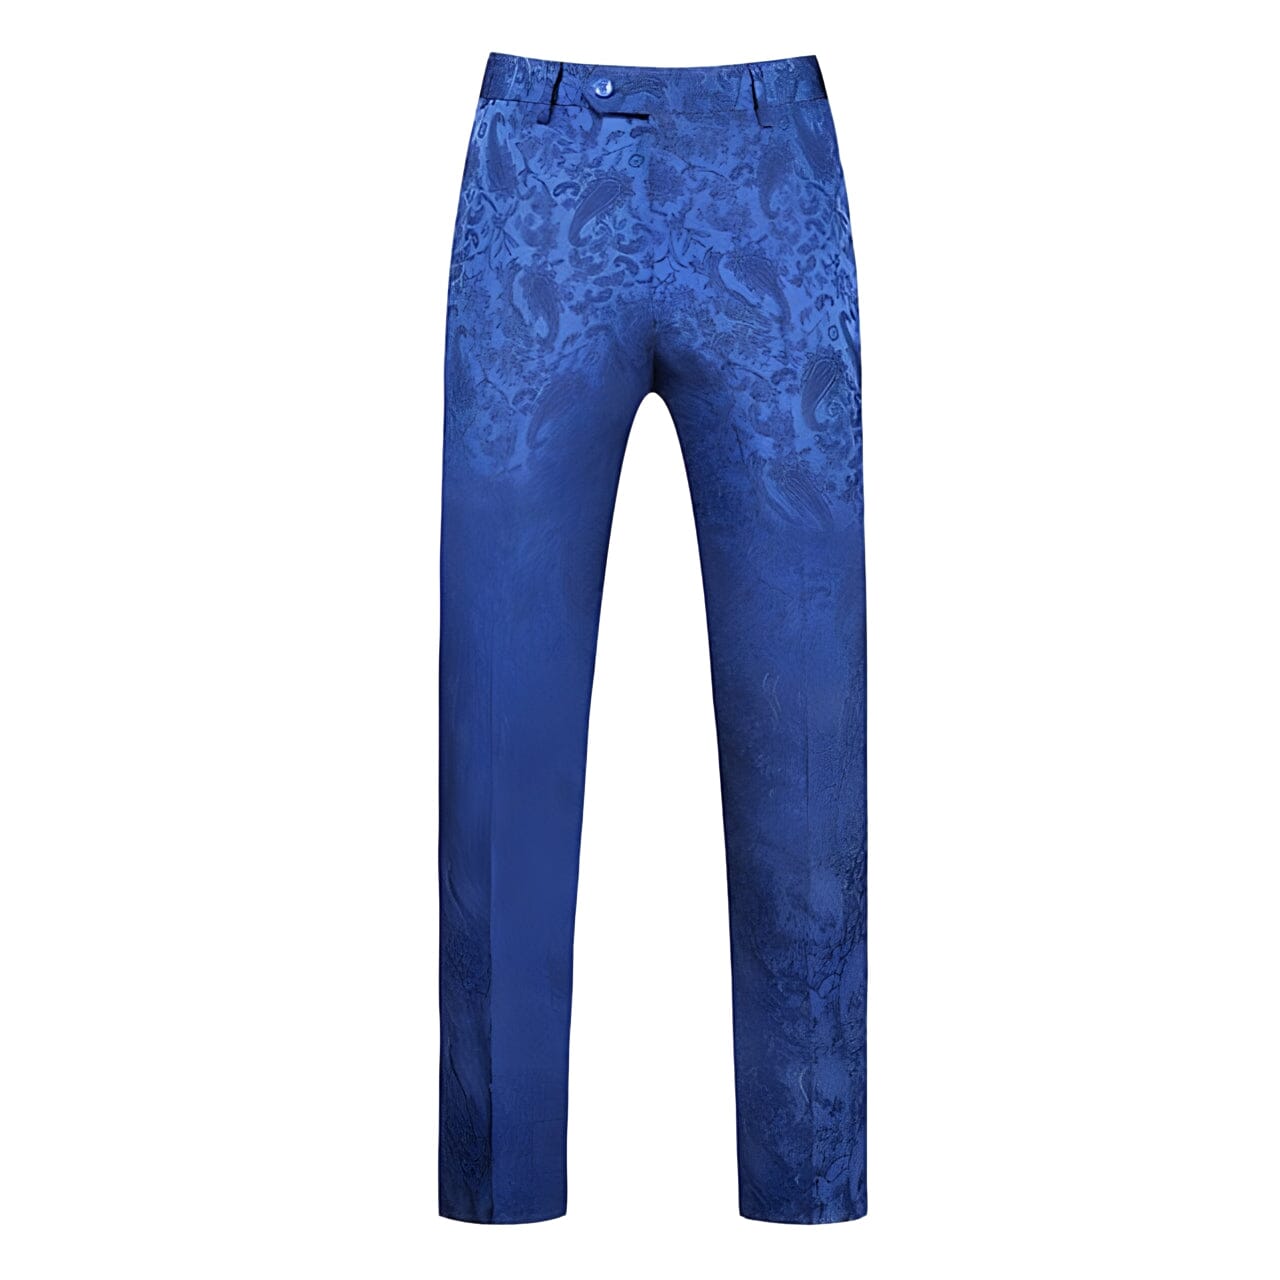 The Harrington Jacquard Slim Fit Dress Suit Pants Trousers - Multiple Colors WD Styles Royal Blue XS 